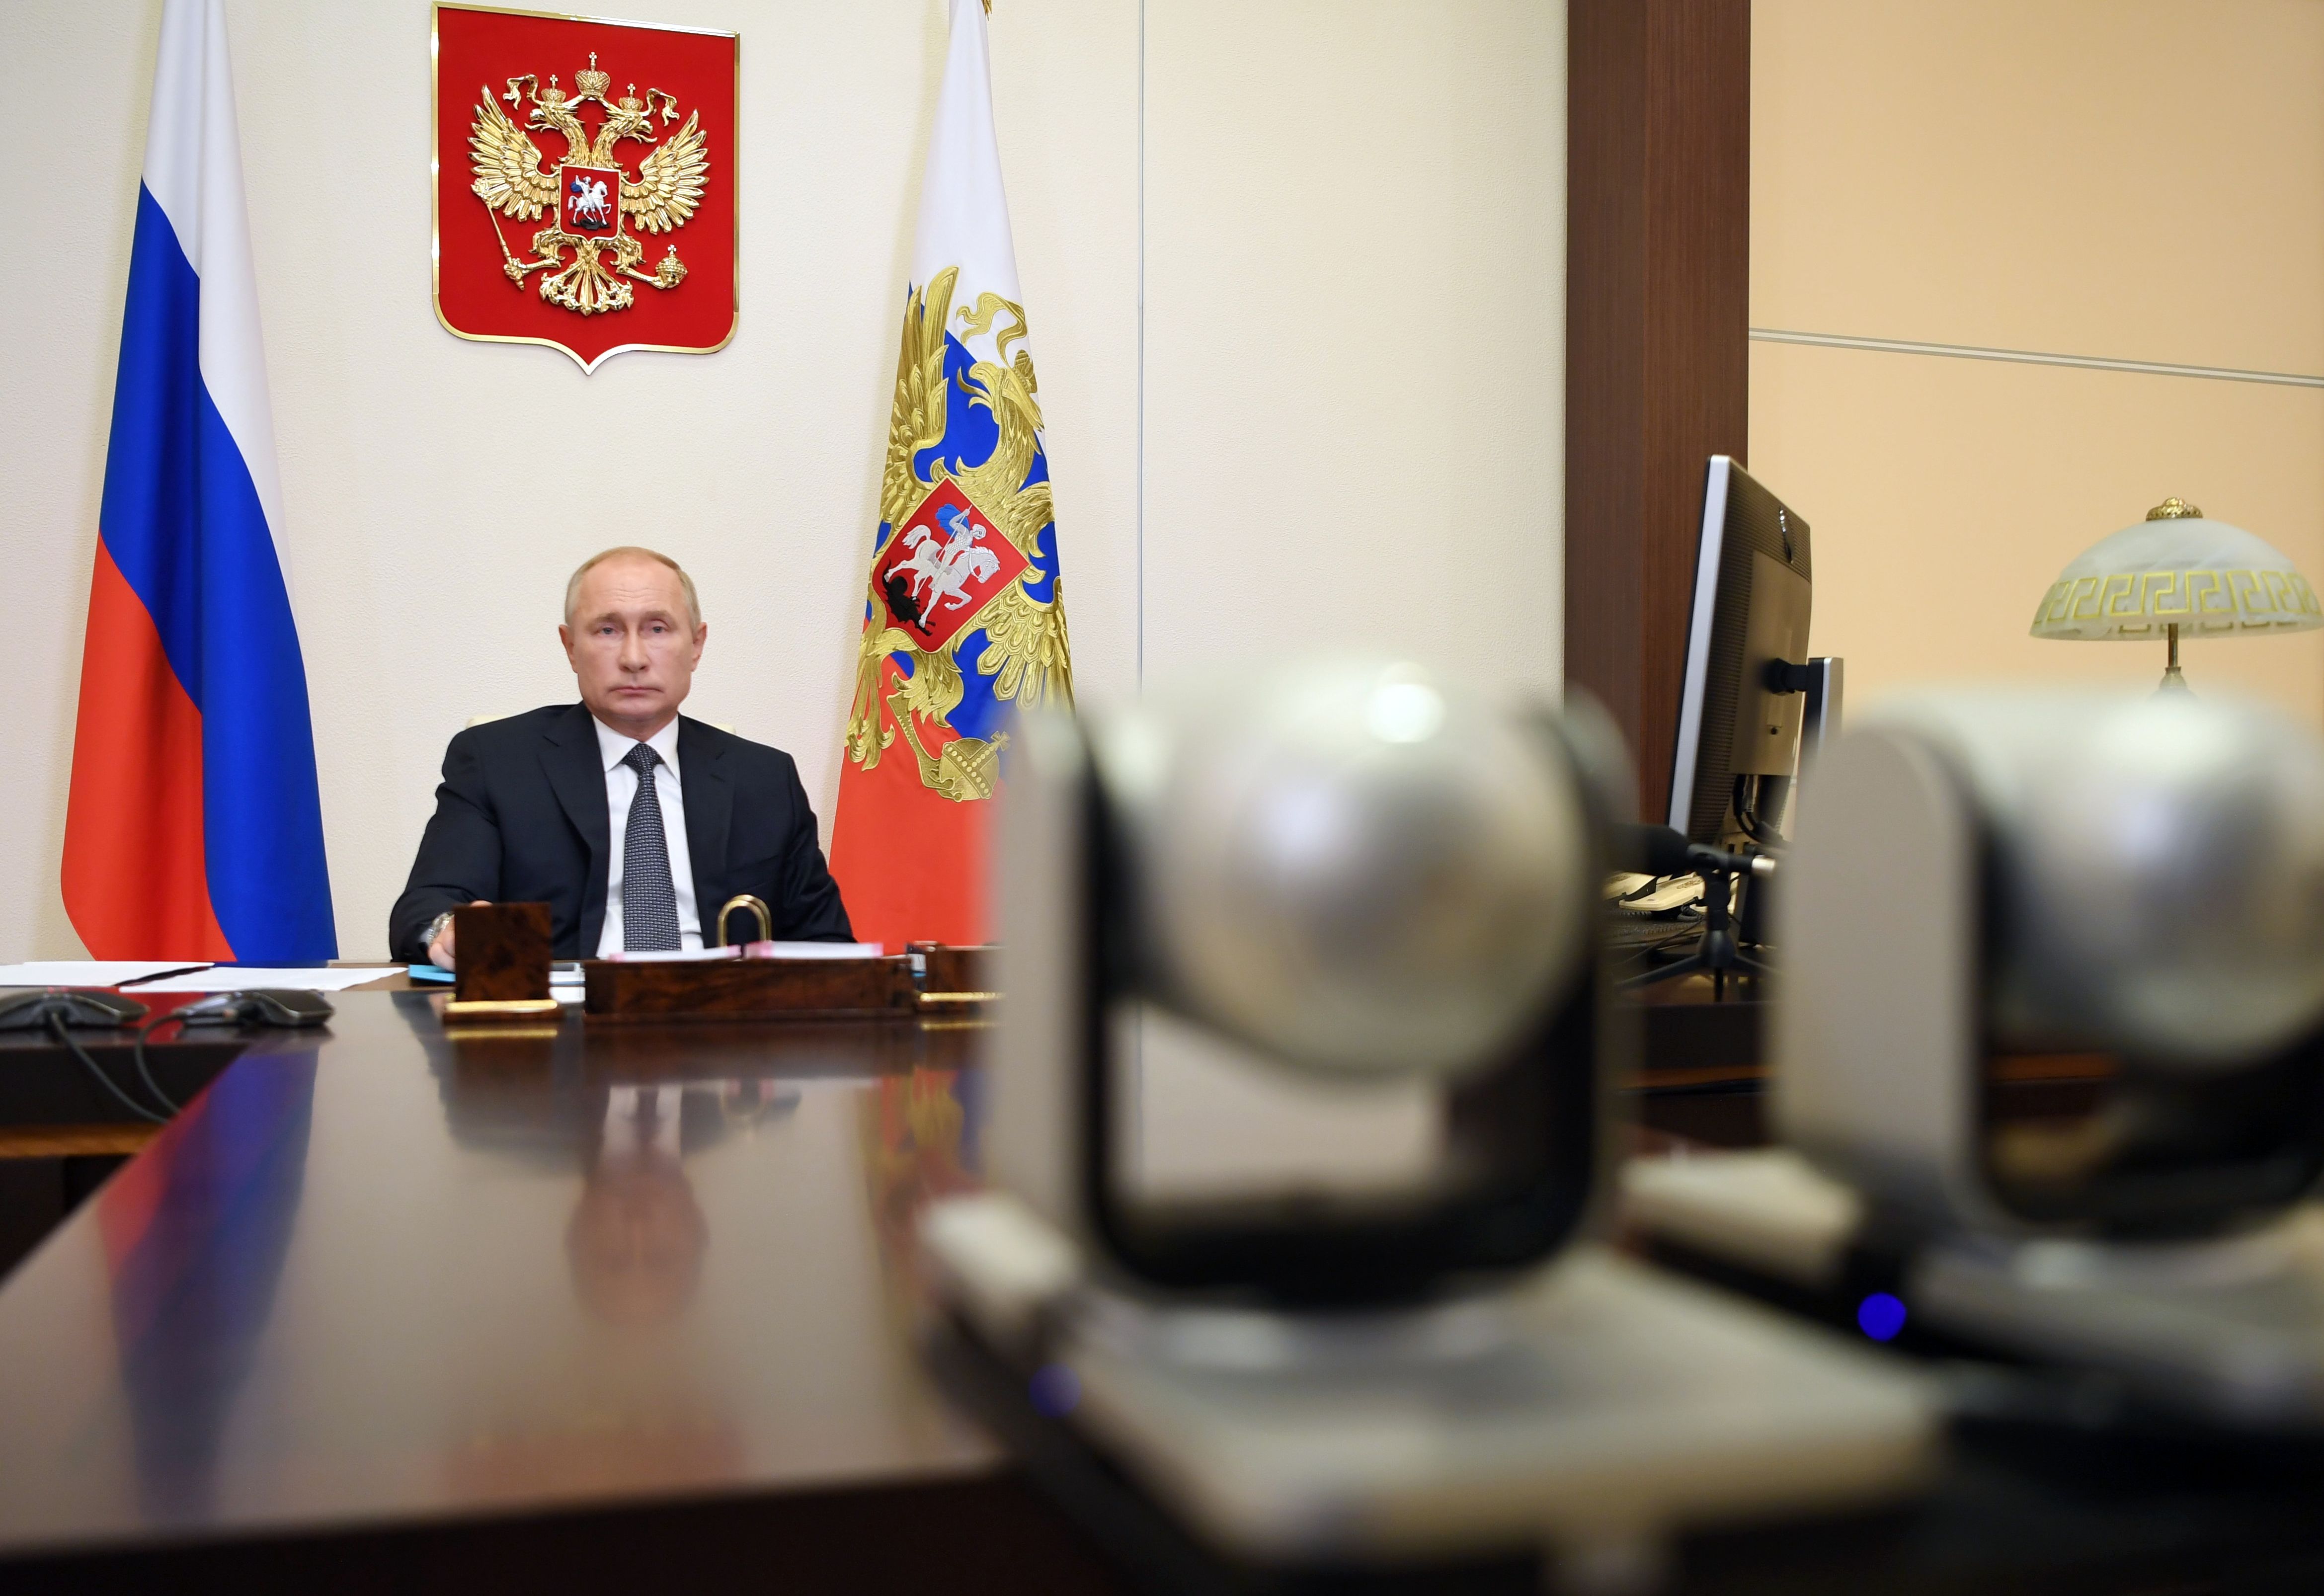 El presidente de Rusia, Vladimir Putin, anunció el registro de la vacuna Sputnik V contra el coronavirus. (Foto Prensa Libre: AFP)